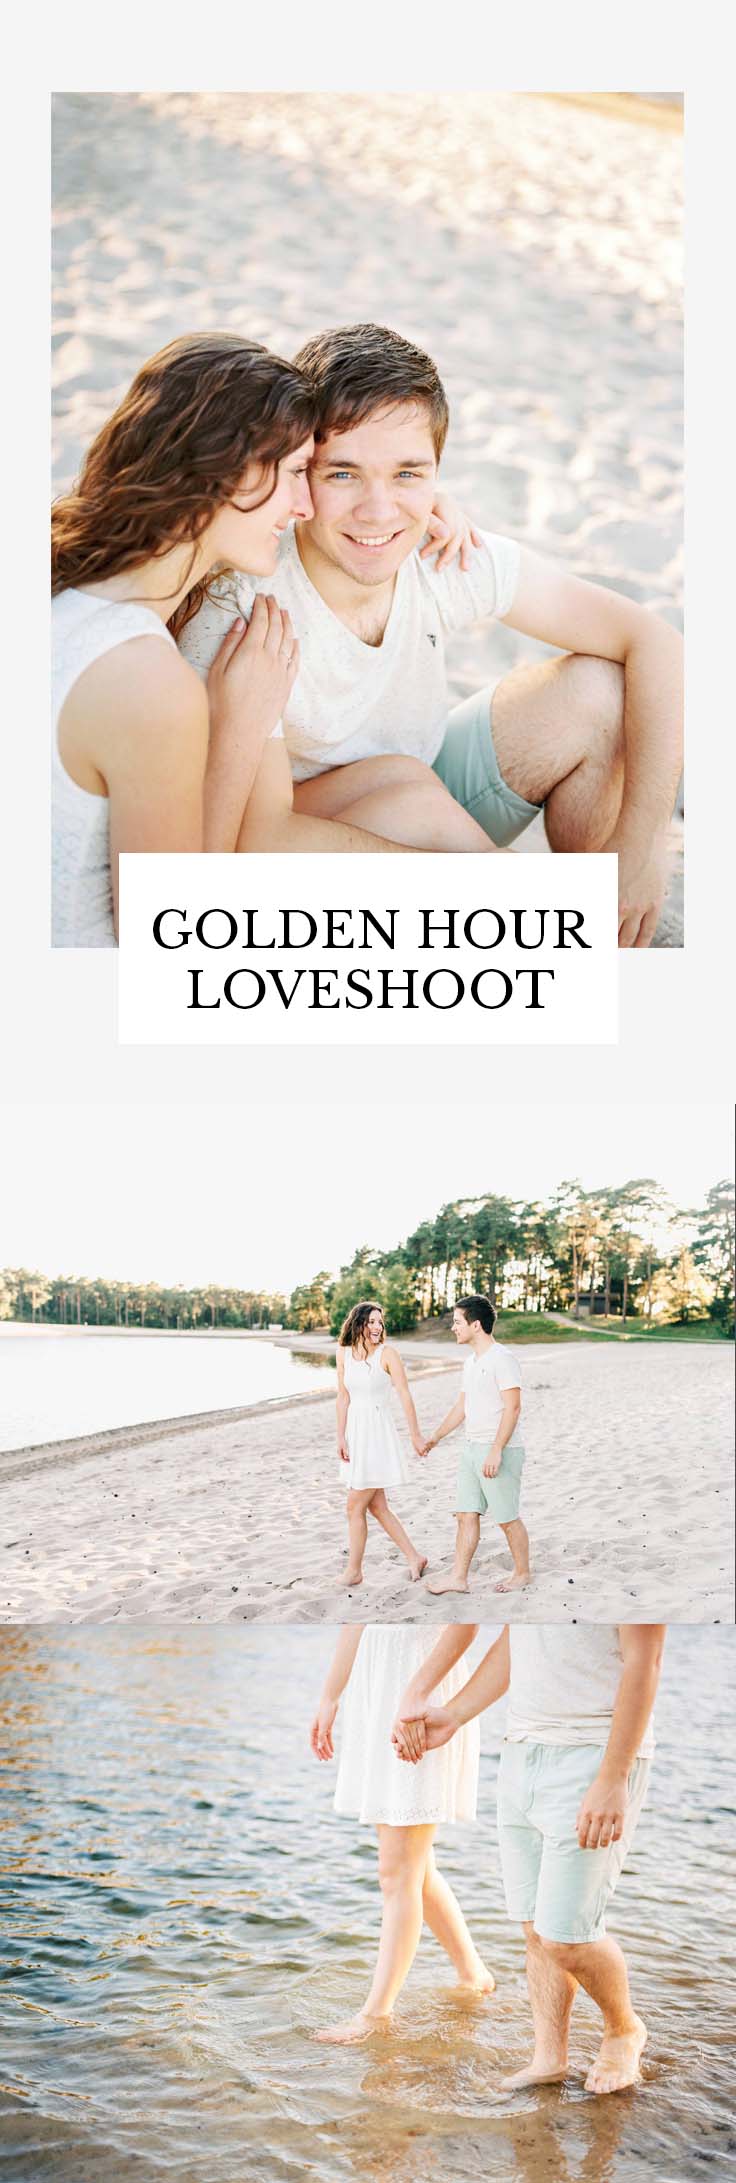 Golden hour loveshoot